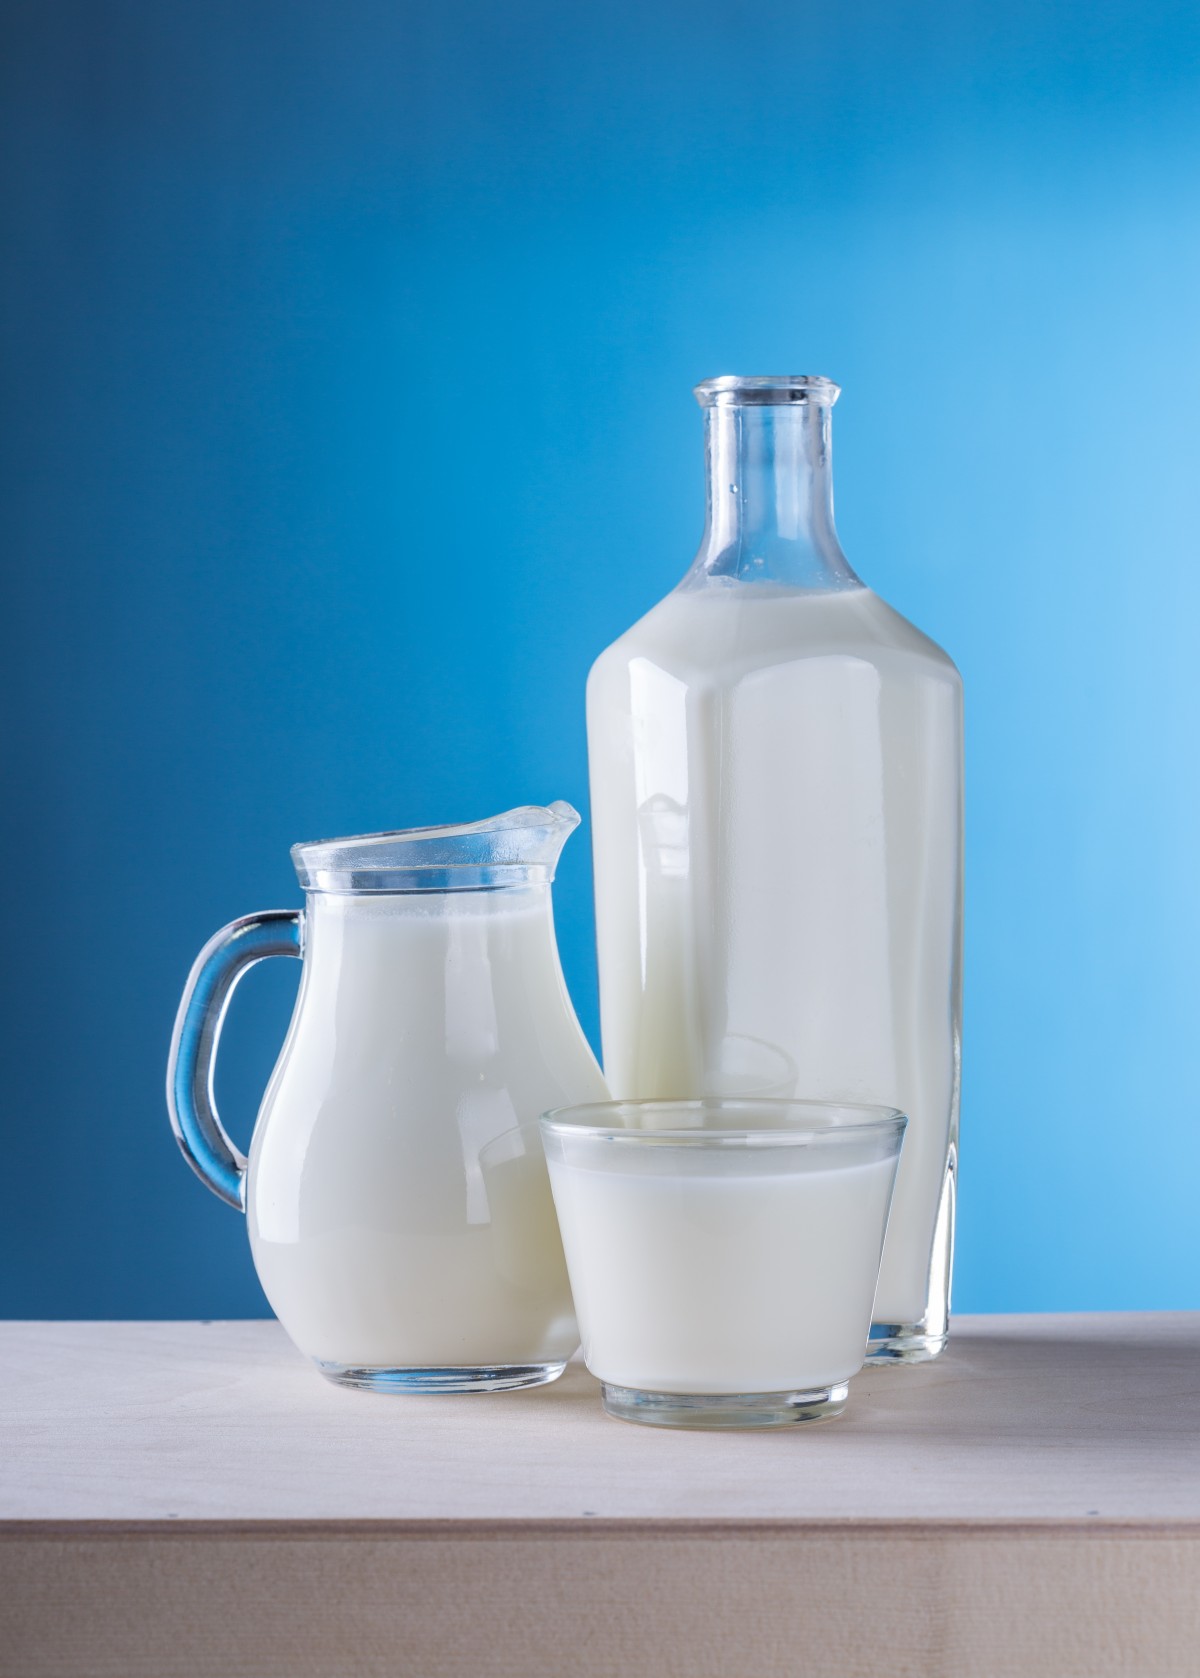 En la imagen se puede ver una botella, una jarra y un vaso de leche